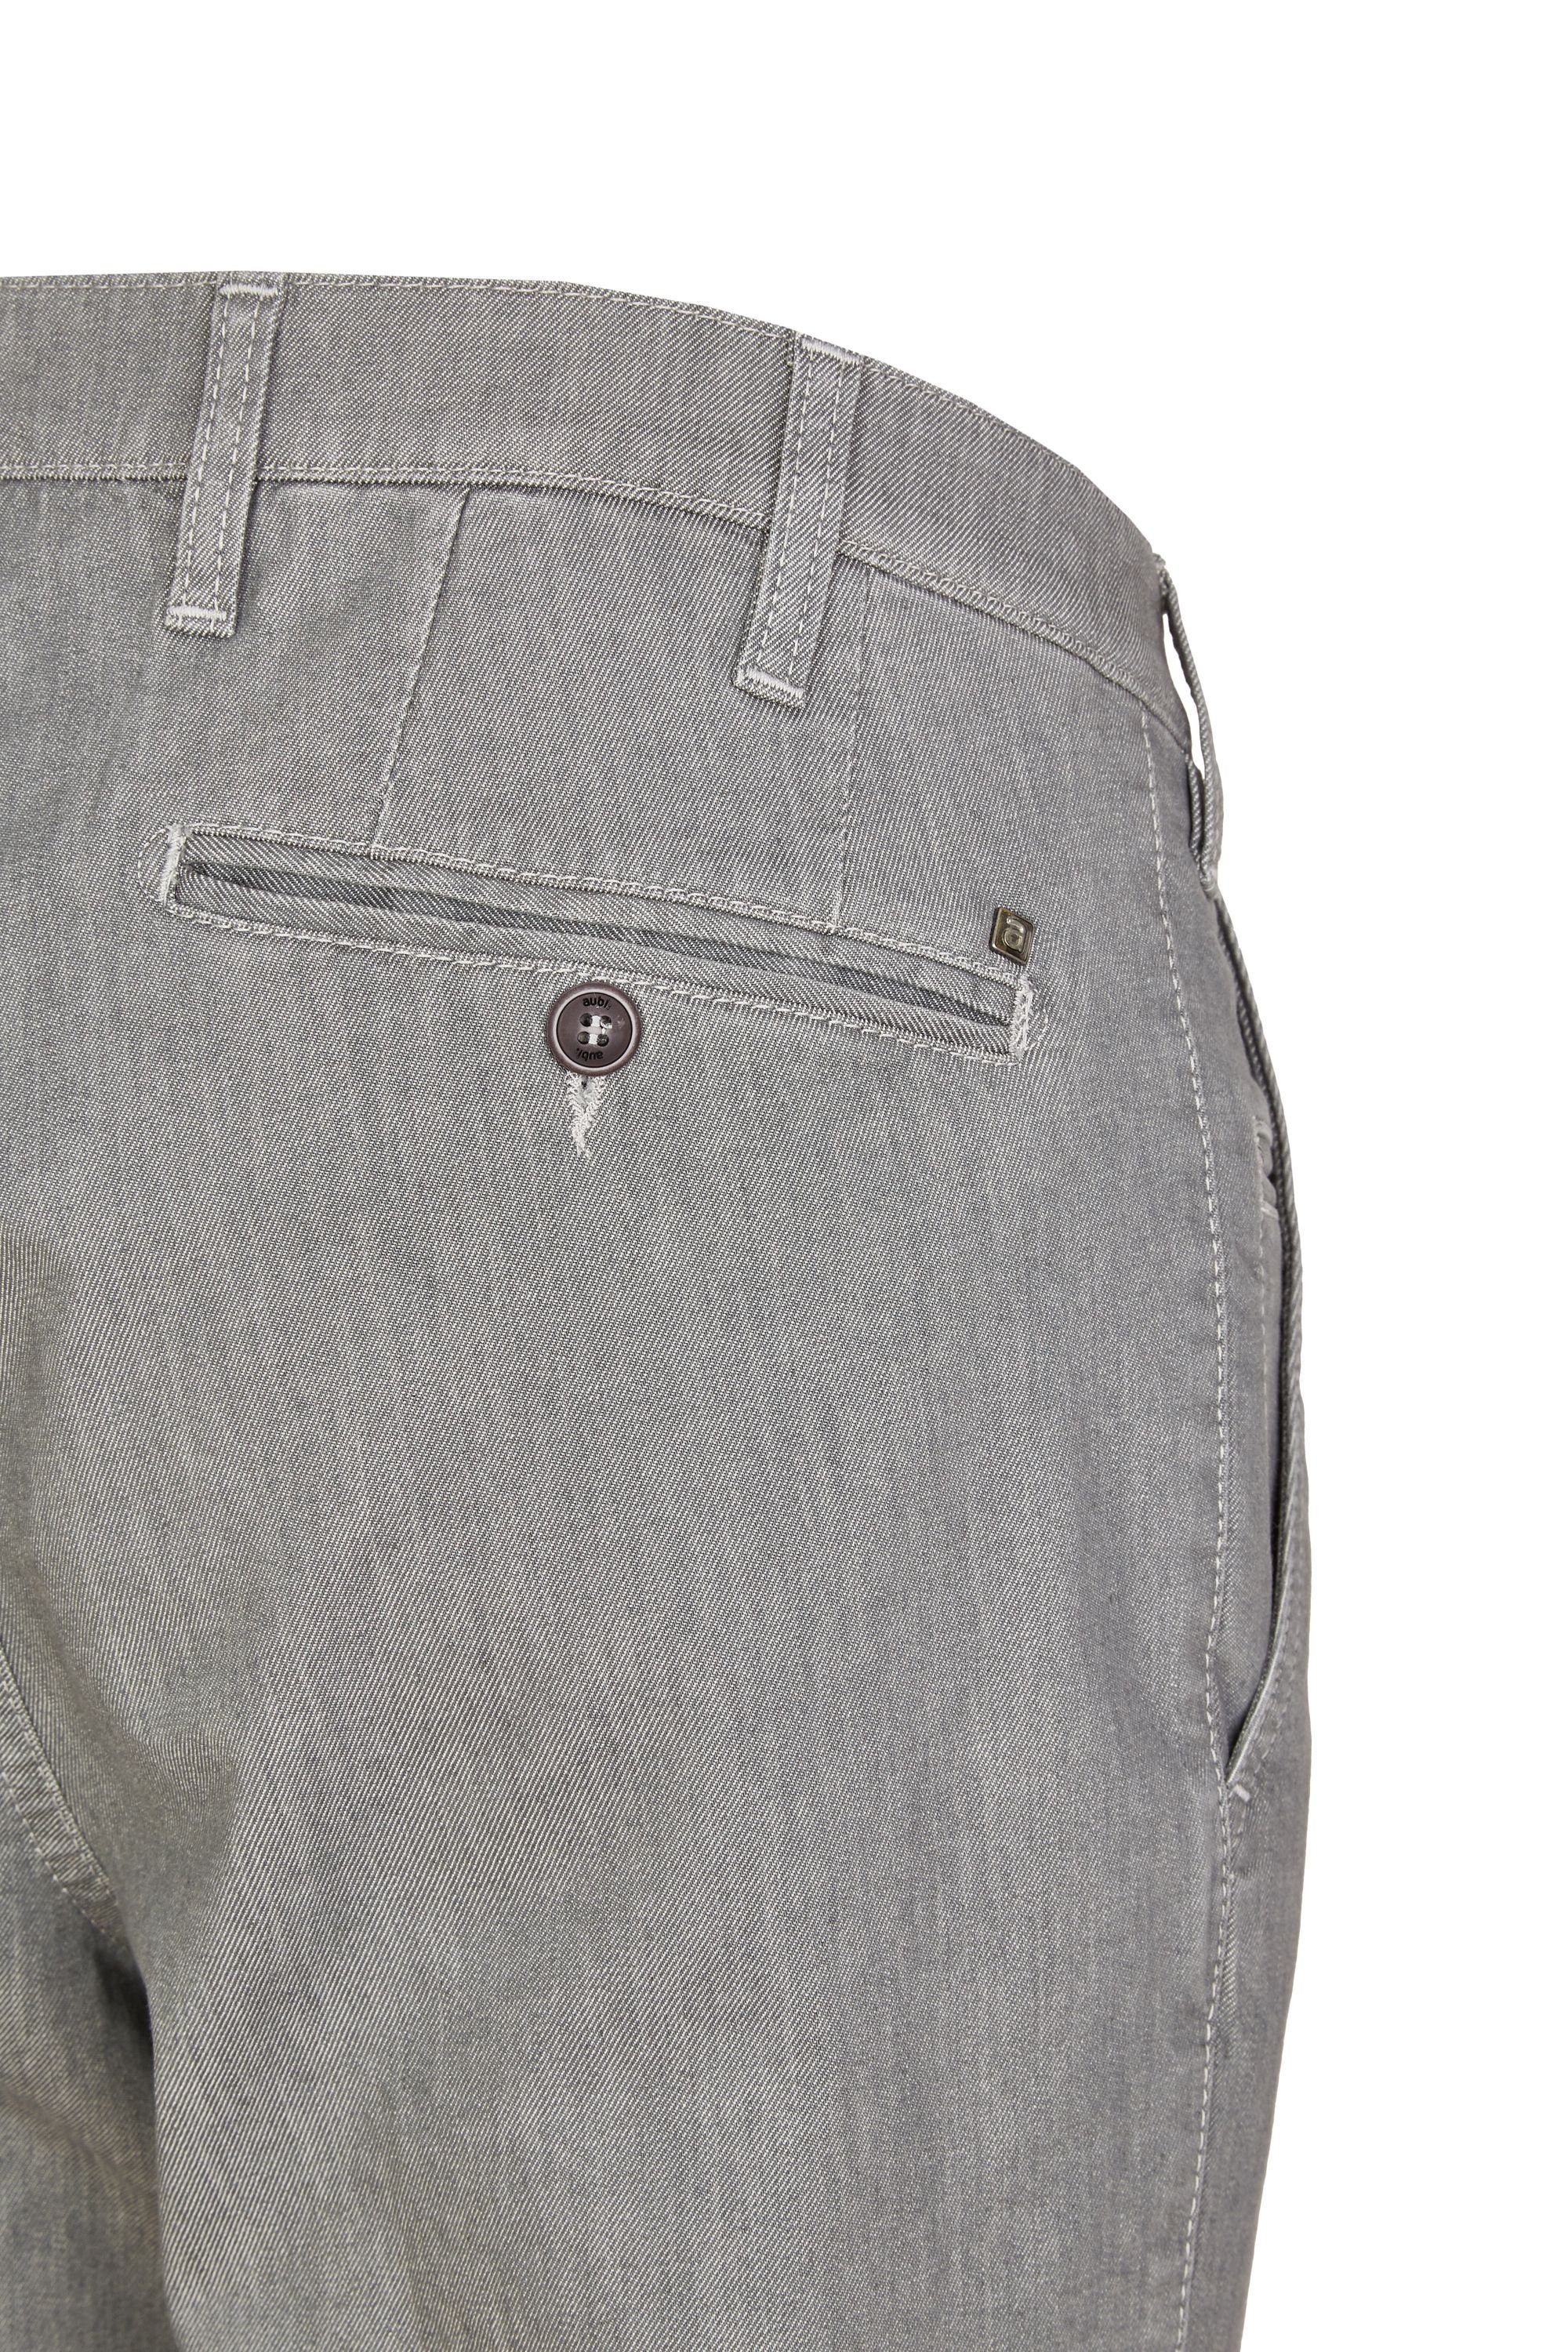 Herren Fit Modell Perfect aus aubi: aubi High Stretch Hose Jeans 526 (56) Baumwolle Sommer Bequeme grey Jeans Flex